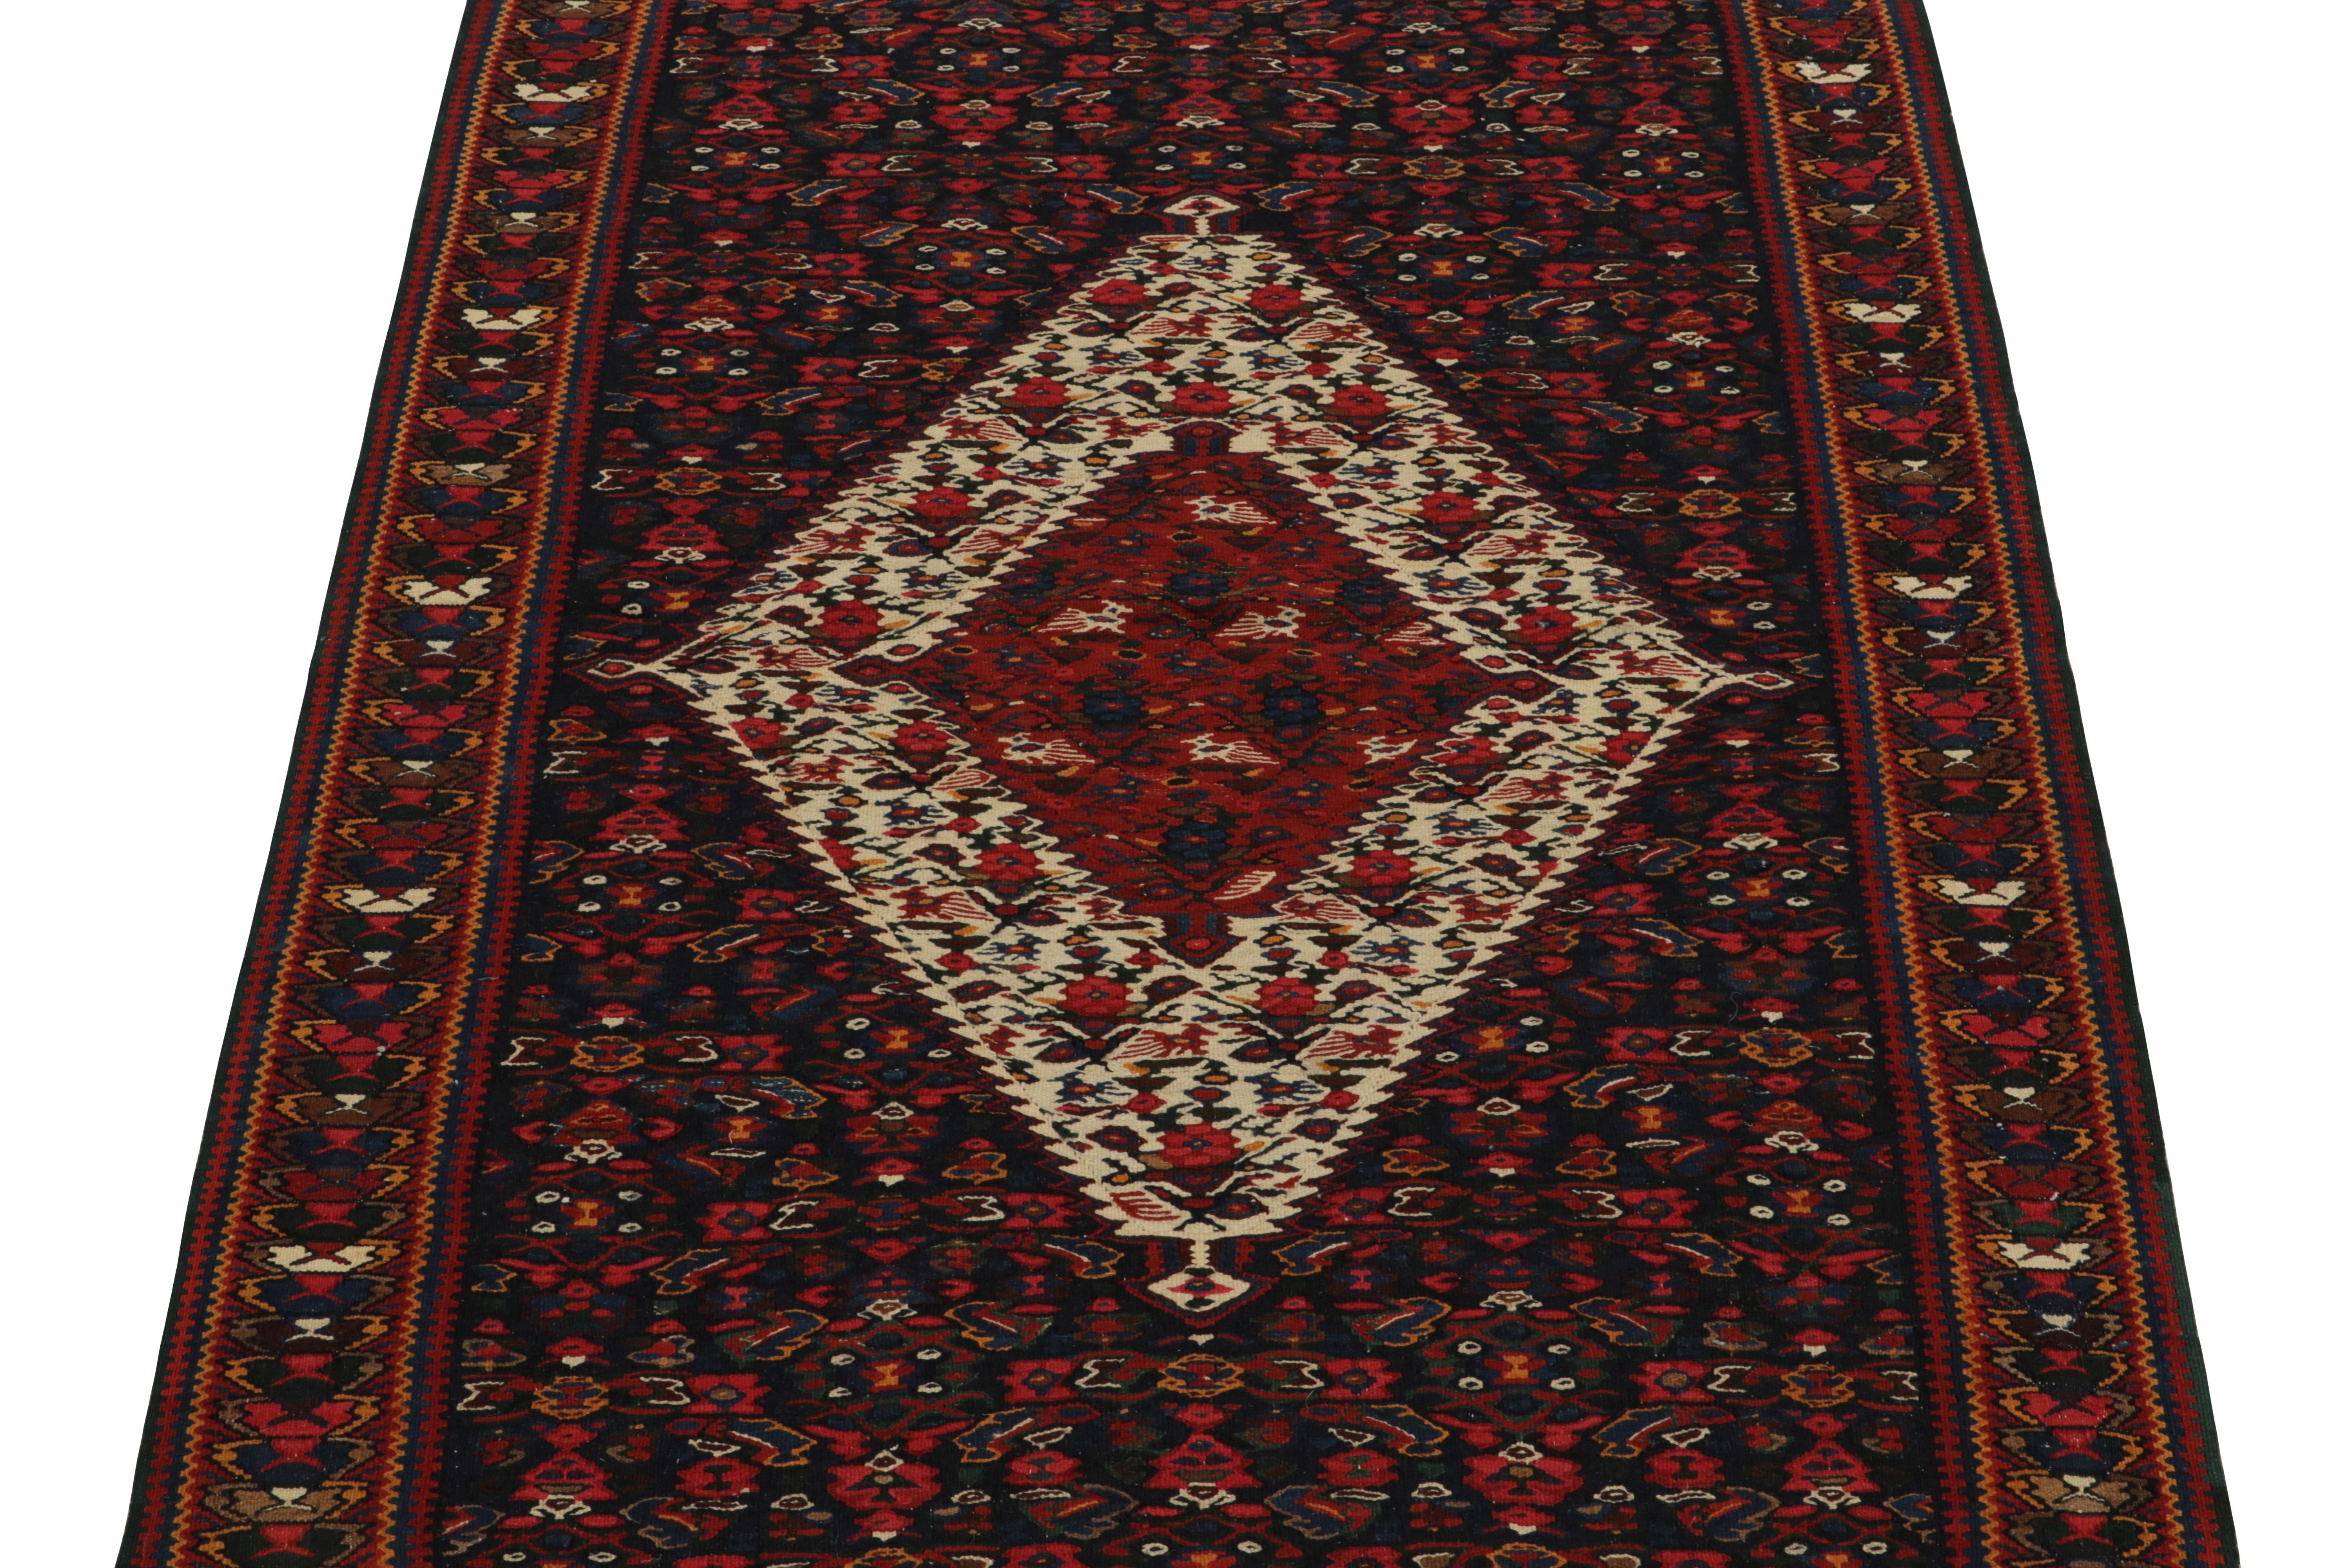 Persian 1940s Vintage Senneh Kilim in Red, Beige-Brown Tribal pattern by Rug & Kilim For Sale